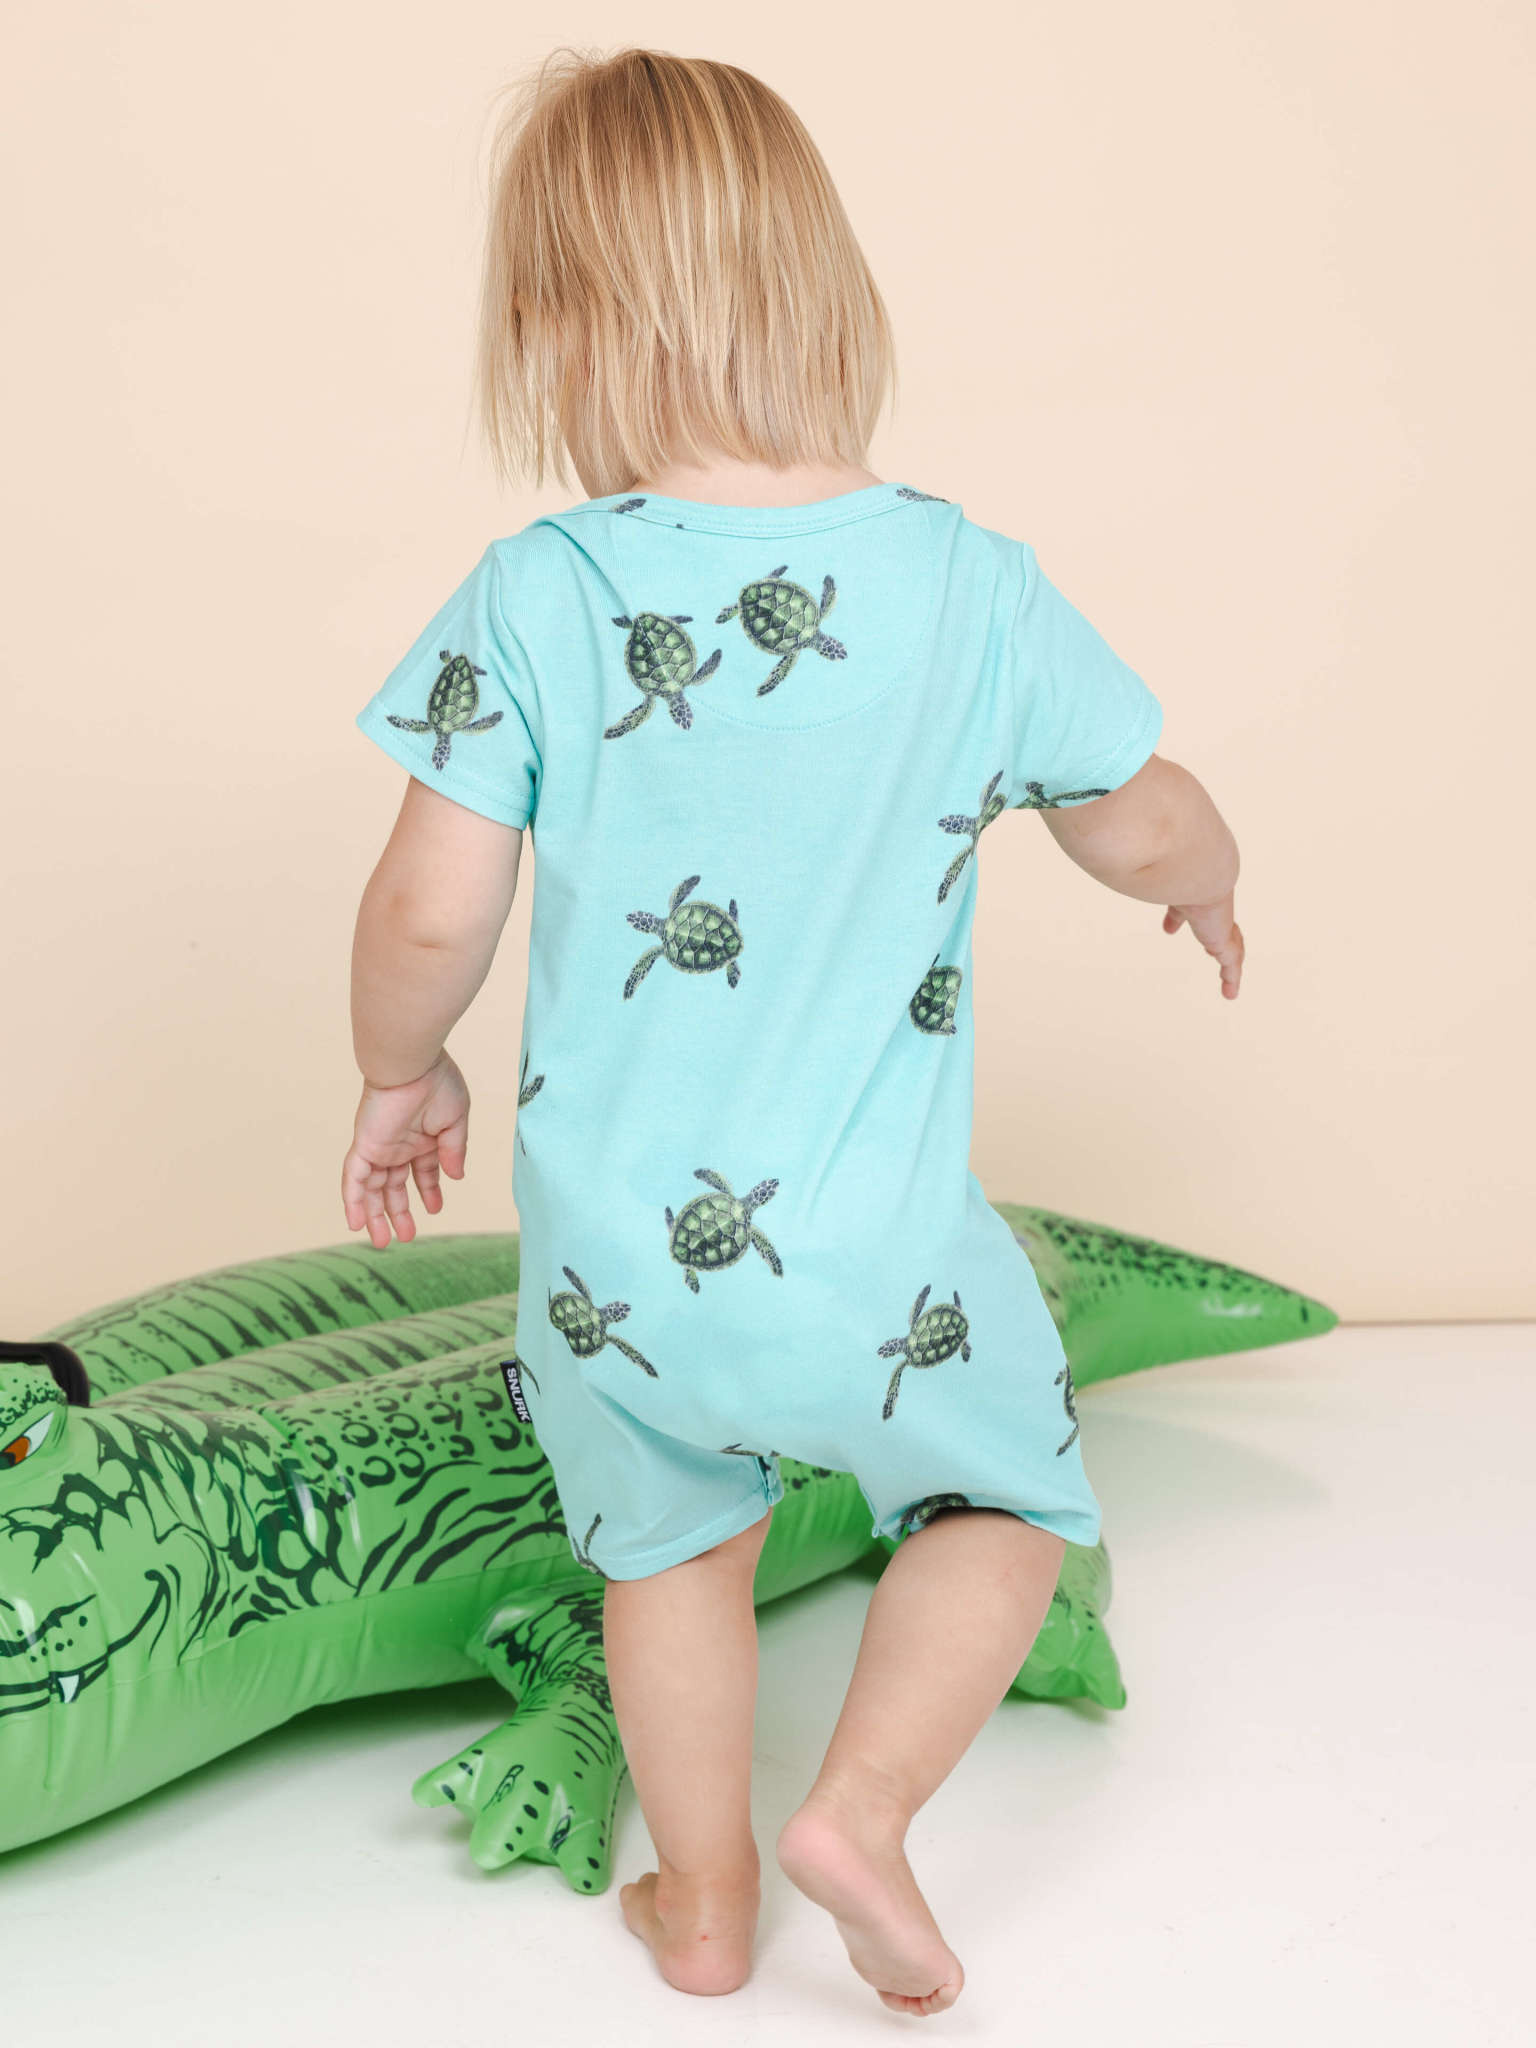 SNURK Snurk homewear - Sea Turtles Playsuit Baby - 74